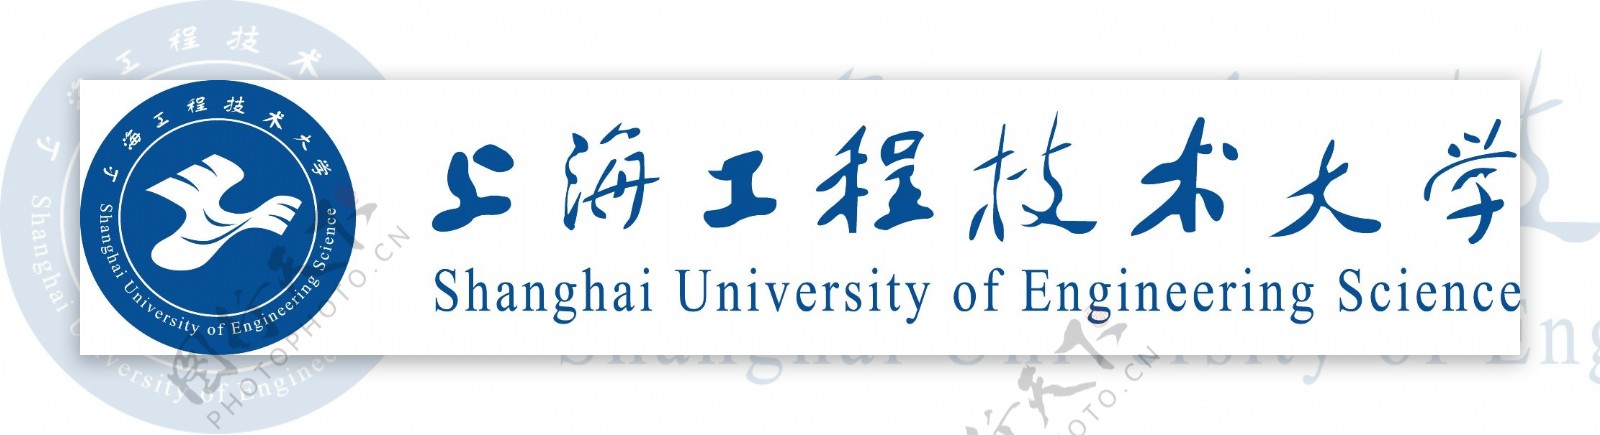 上海工程技术大学logo图片